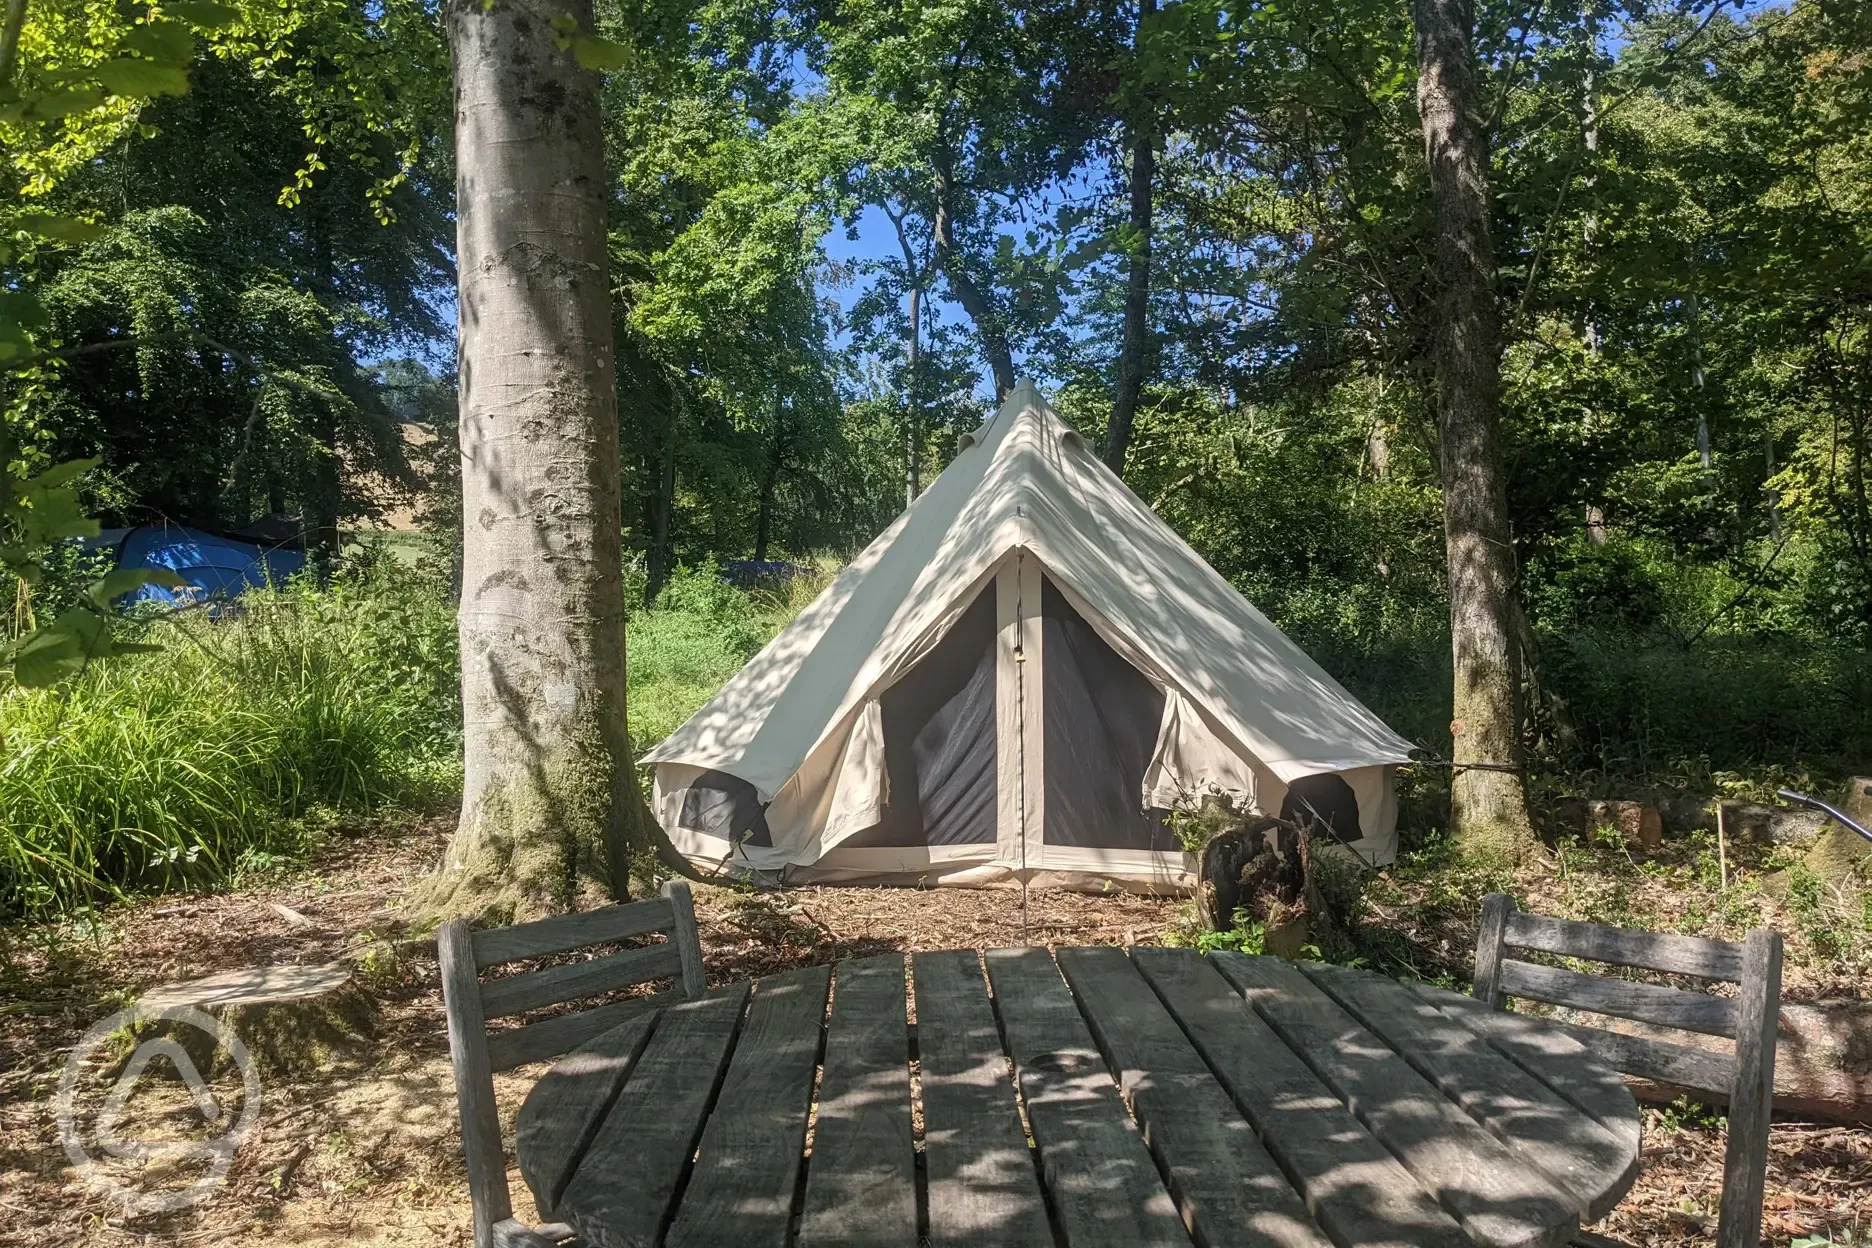 Camping and glamping